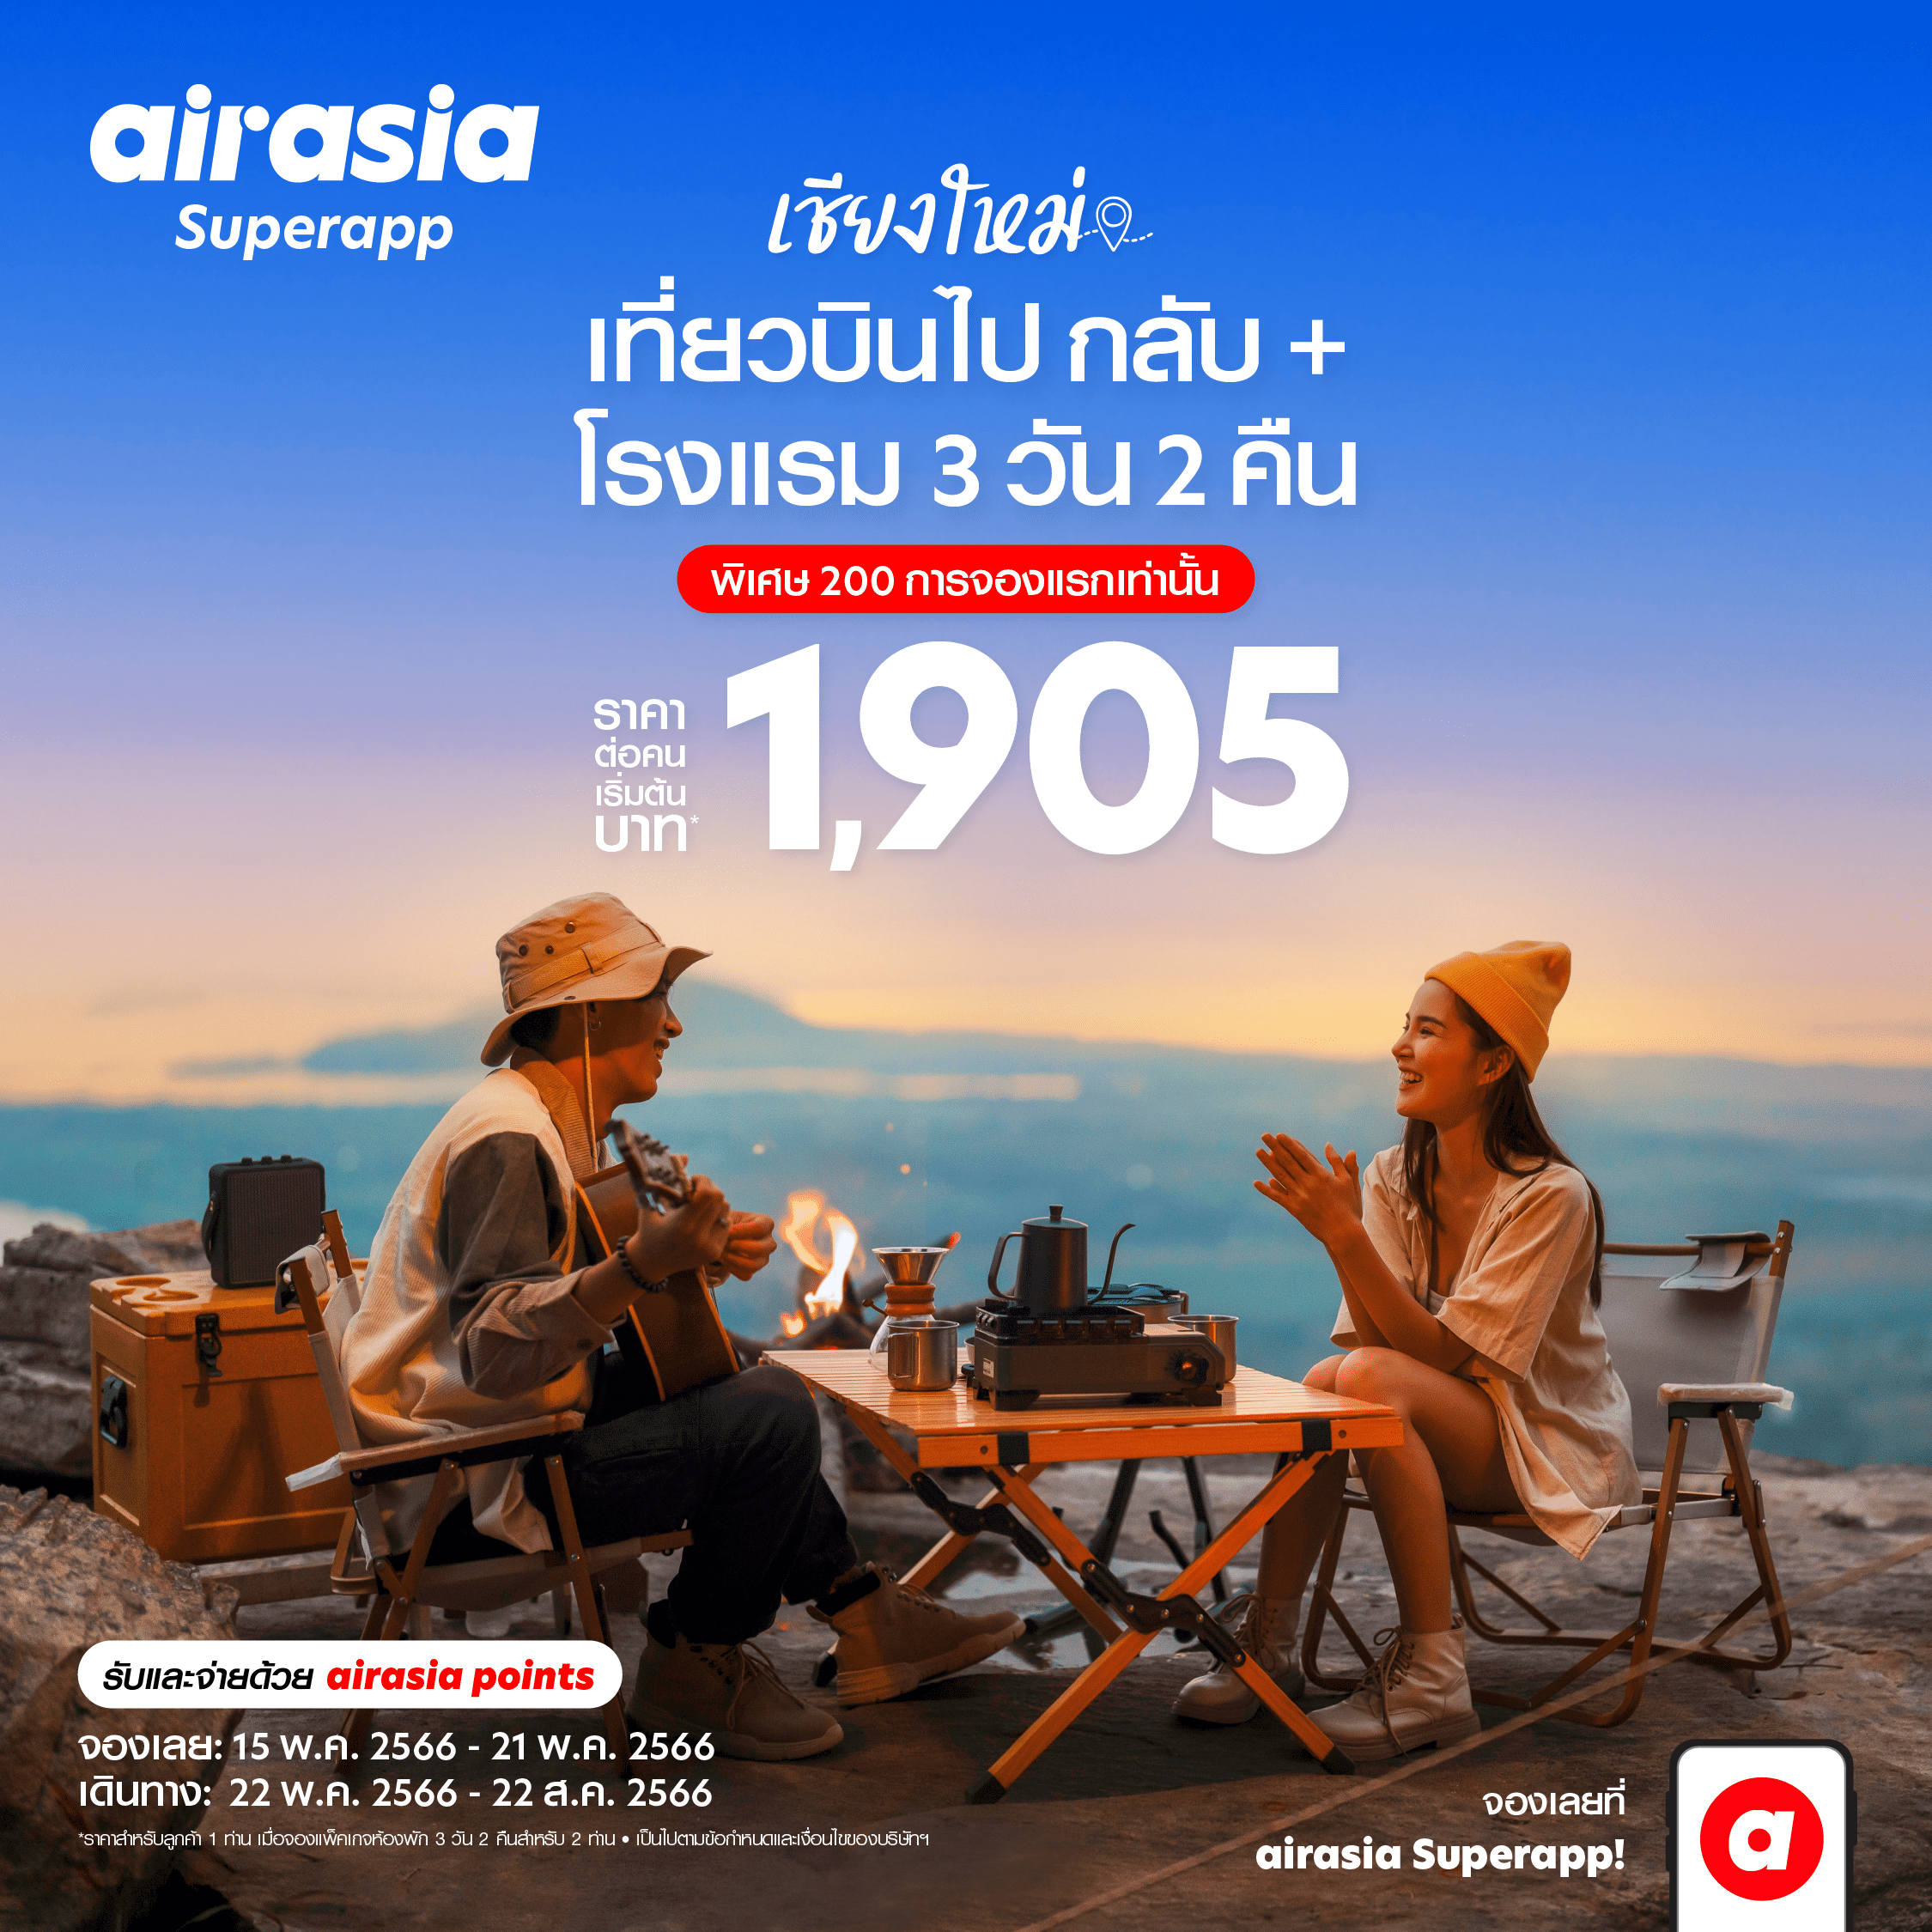 airasia Superapp จัดดีล “เที่ยวบินพร้อมที่พัก” สุดคุ้ม เที่ยวเชียงใหม่ 3 วัน 2 คืน เริ่ม 1,905* บาทต่อท่าน!